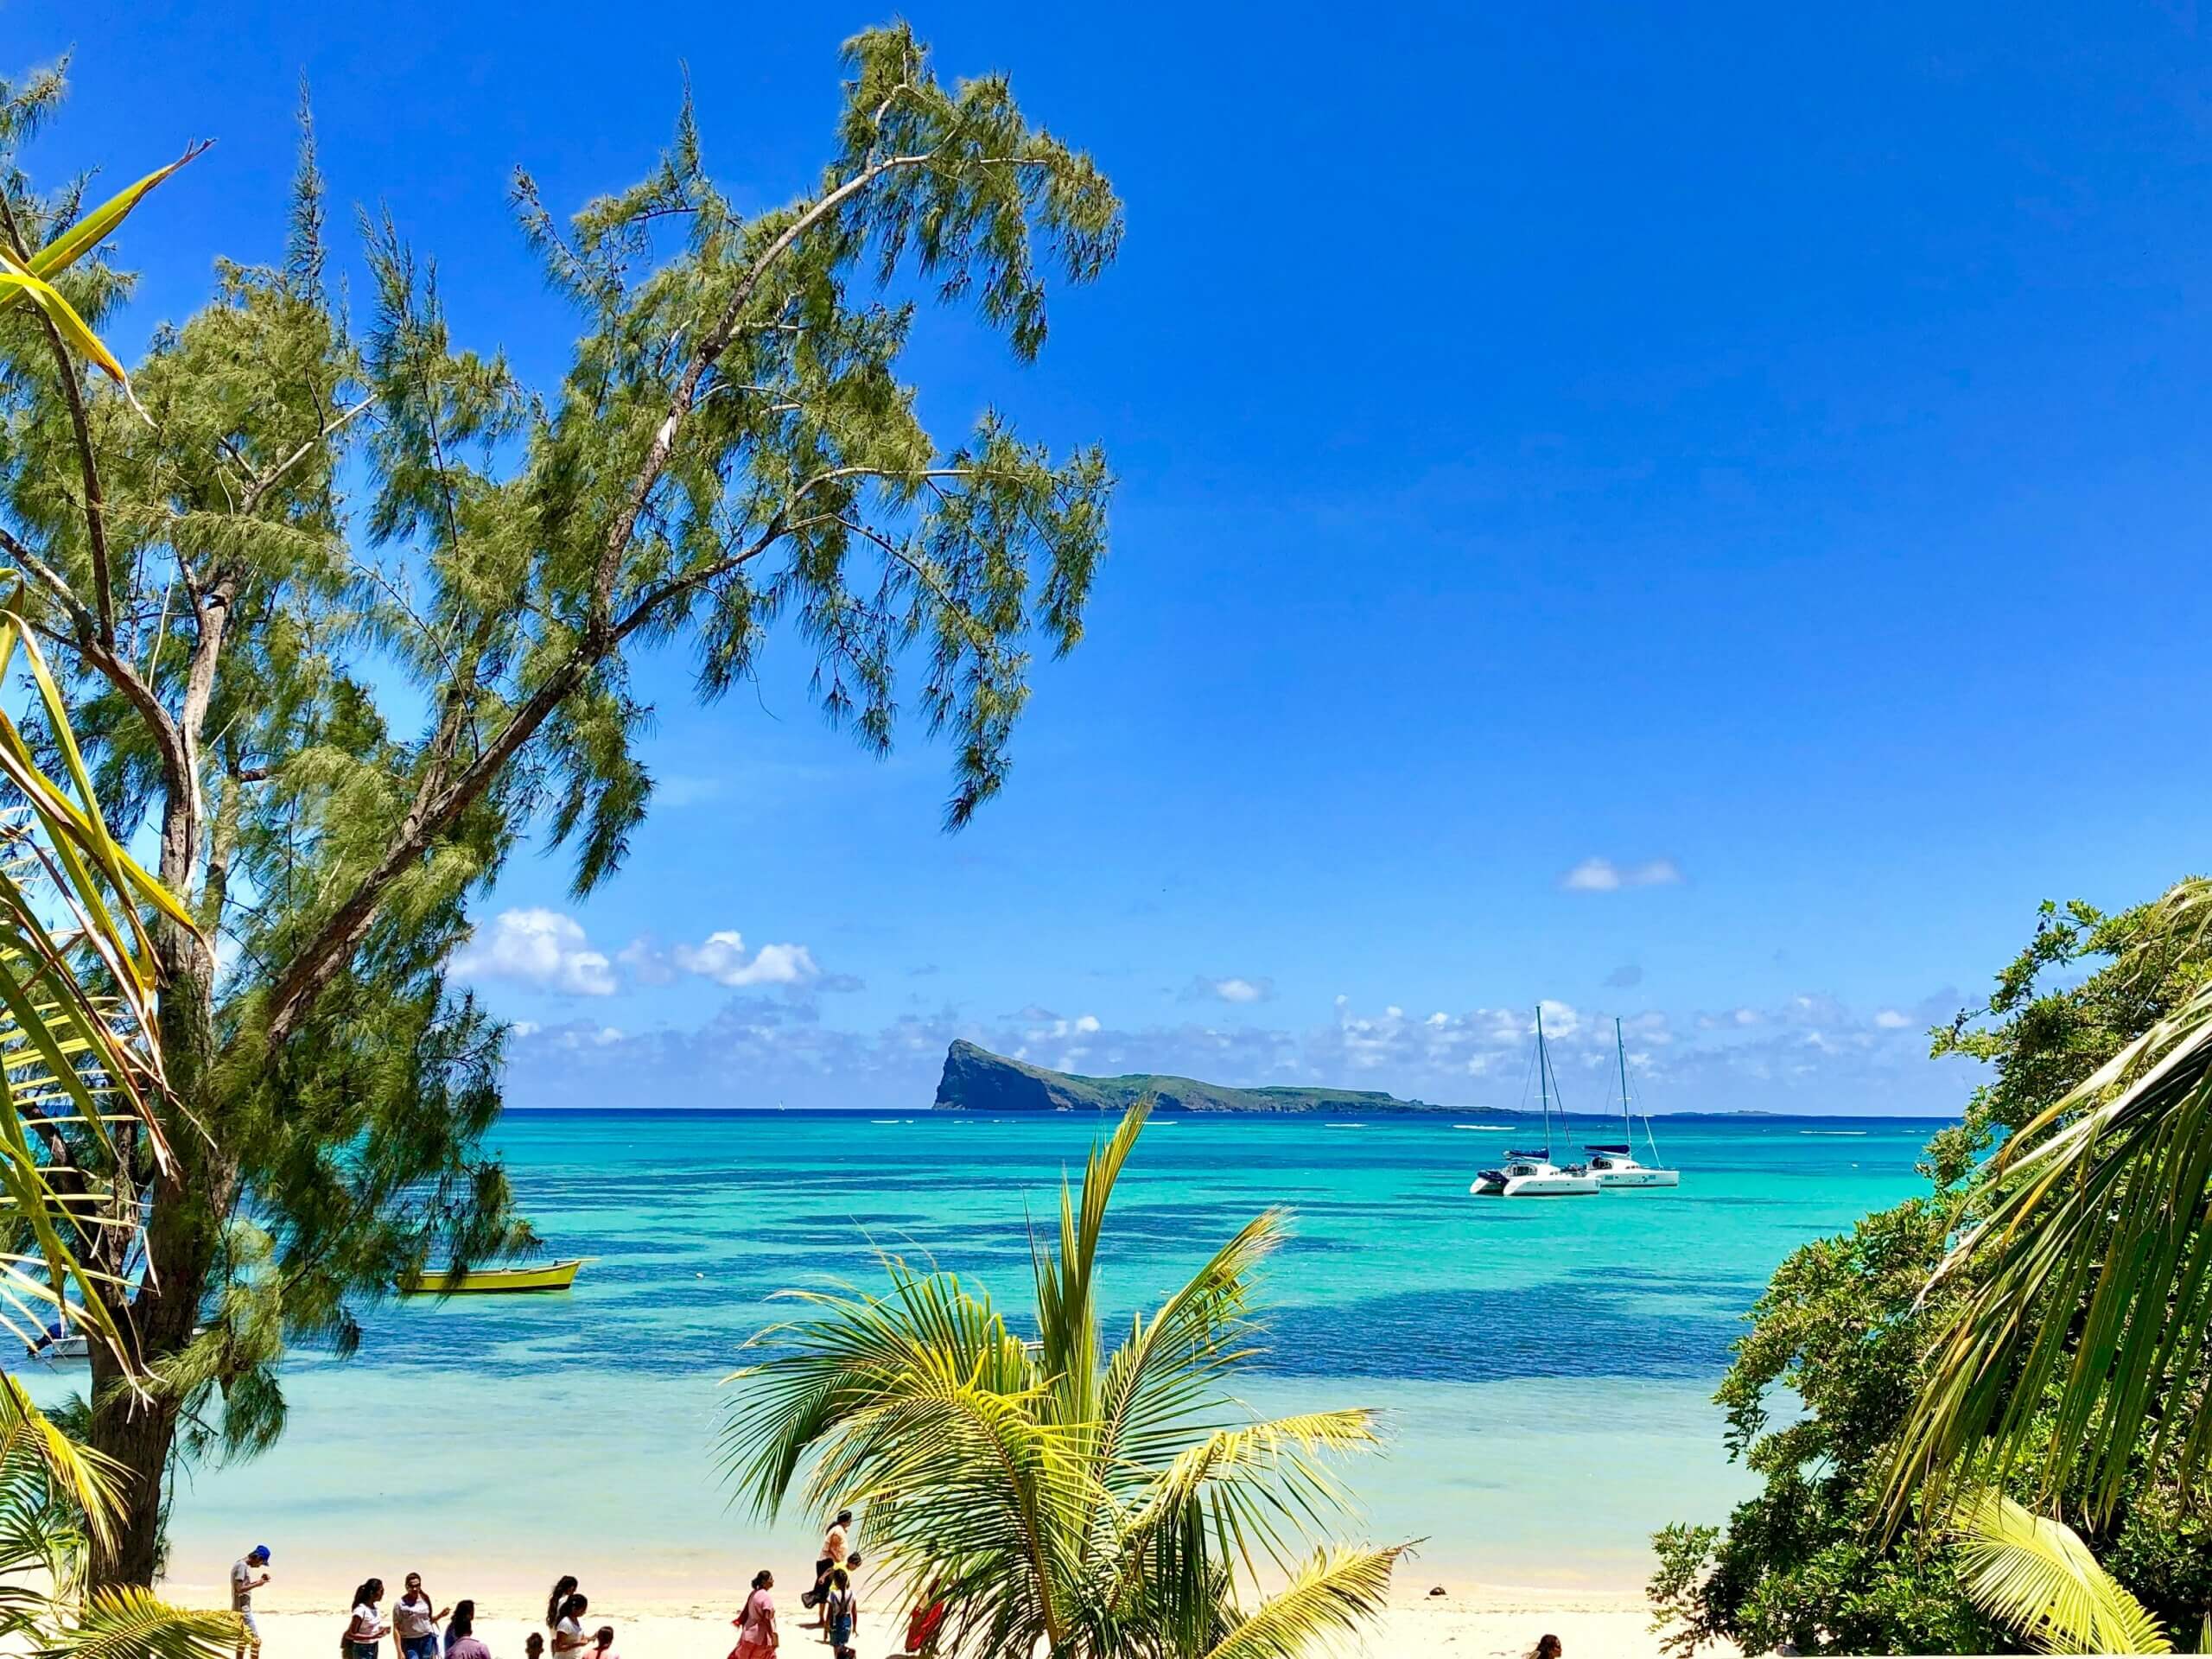 Tropical island beach with 2 catamarans in clean blue water